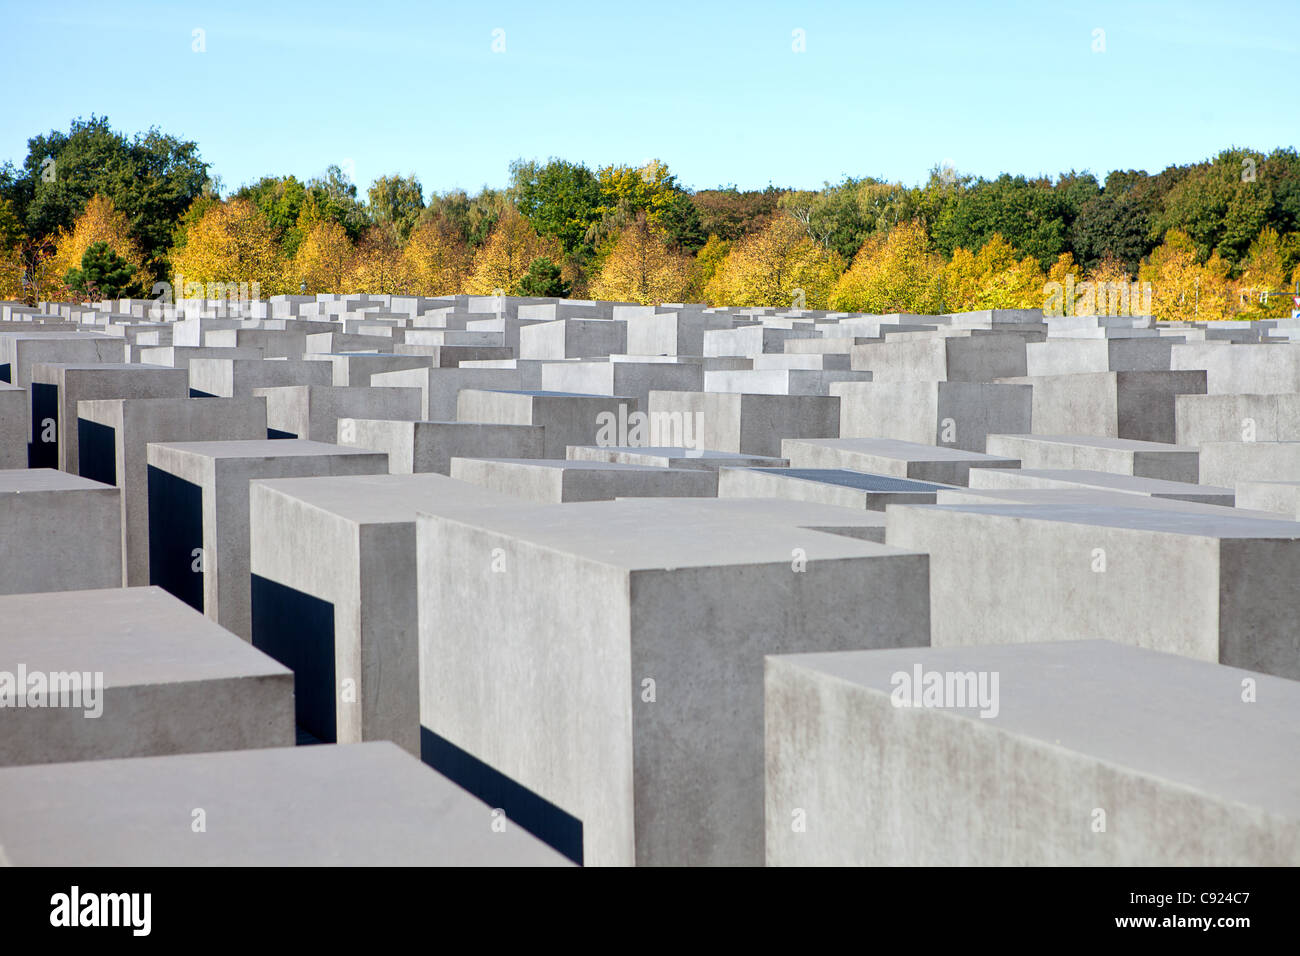 Mémorial aux Juifs assassinés d'Europe, Berlin, Allemagne Banque D'Images